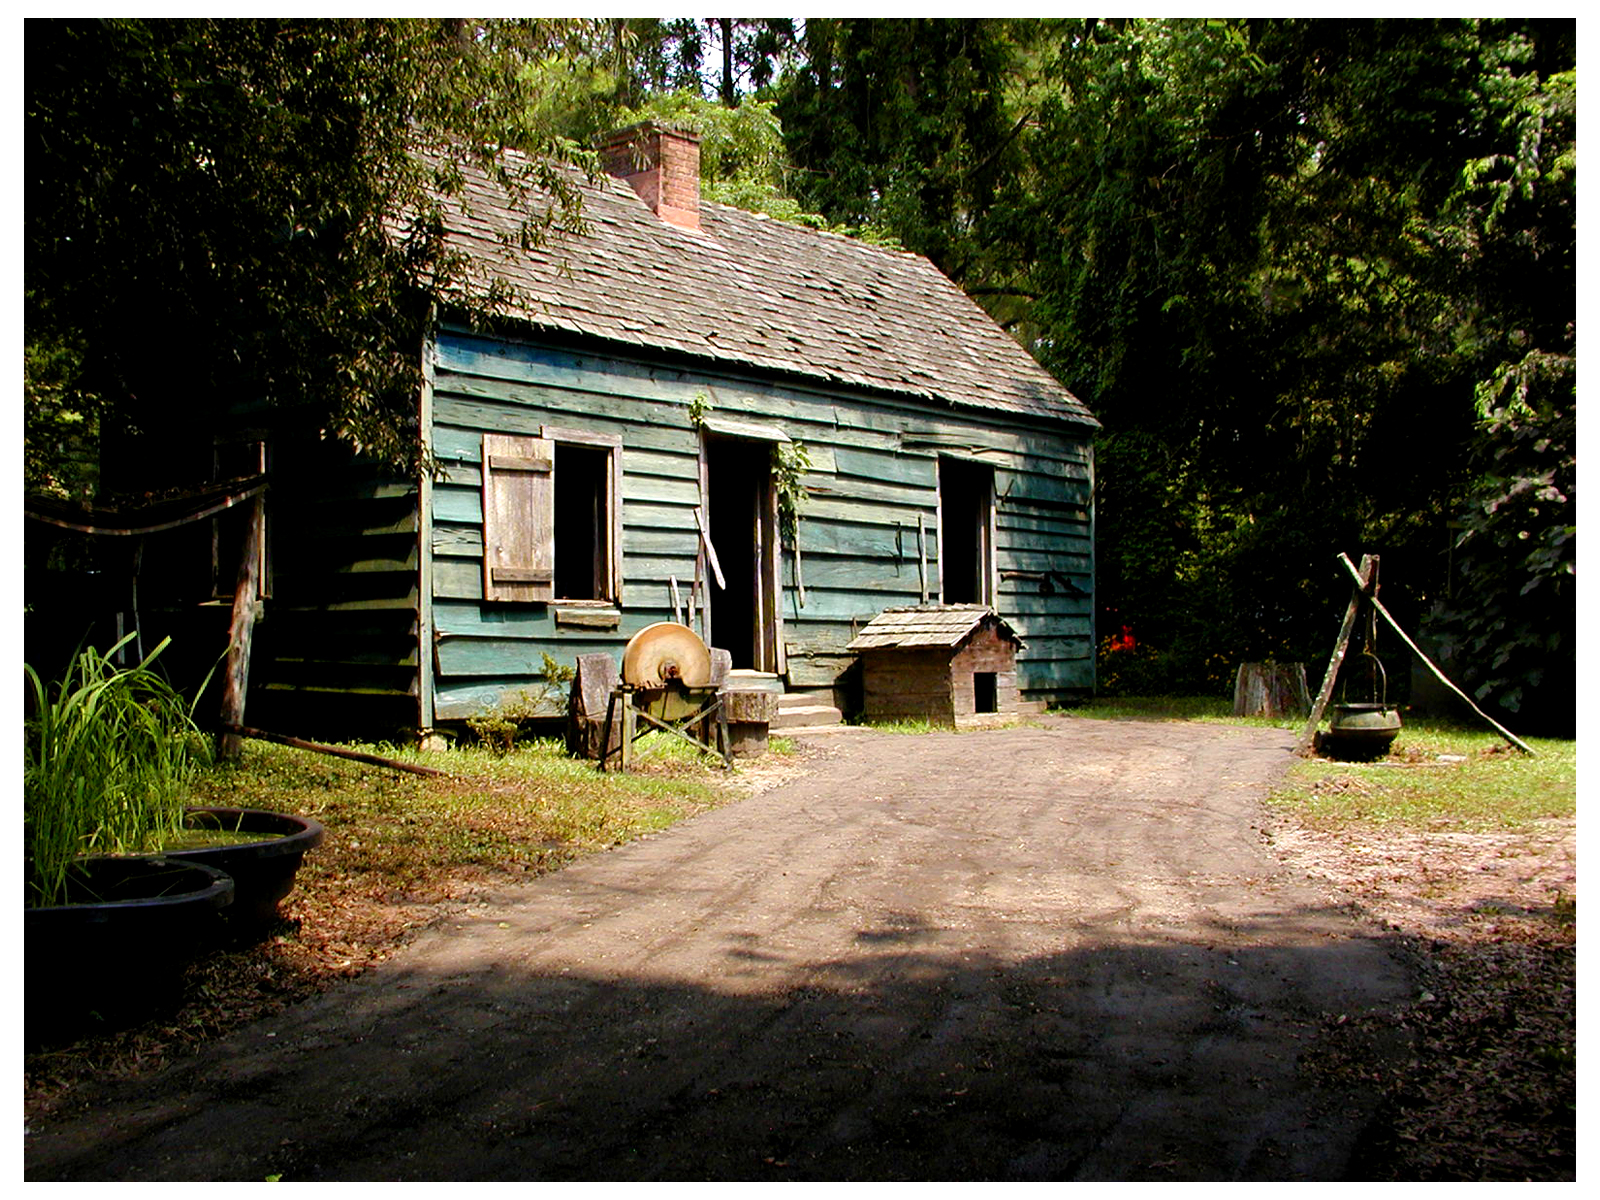 Slave Quarter Museum at Magnolia Gardens, South Carolina